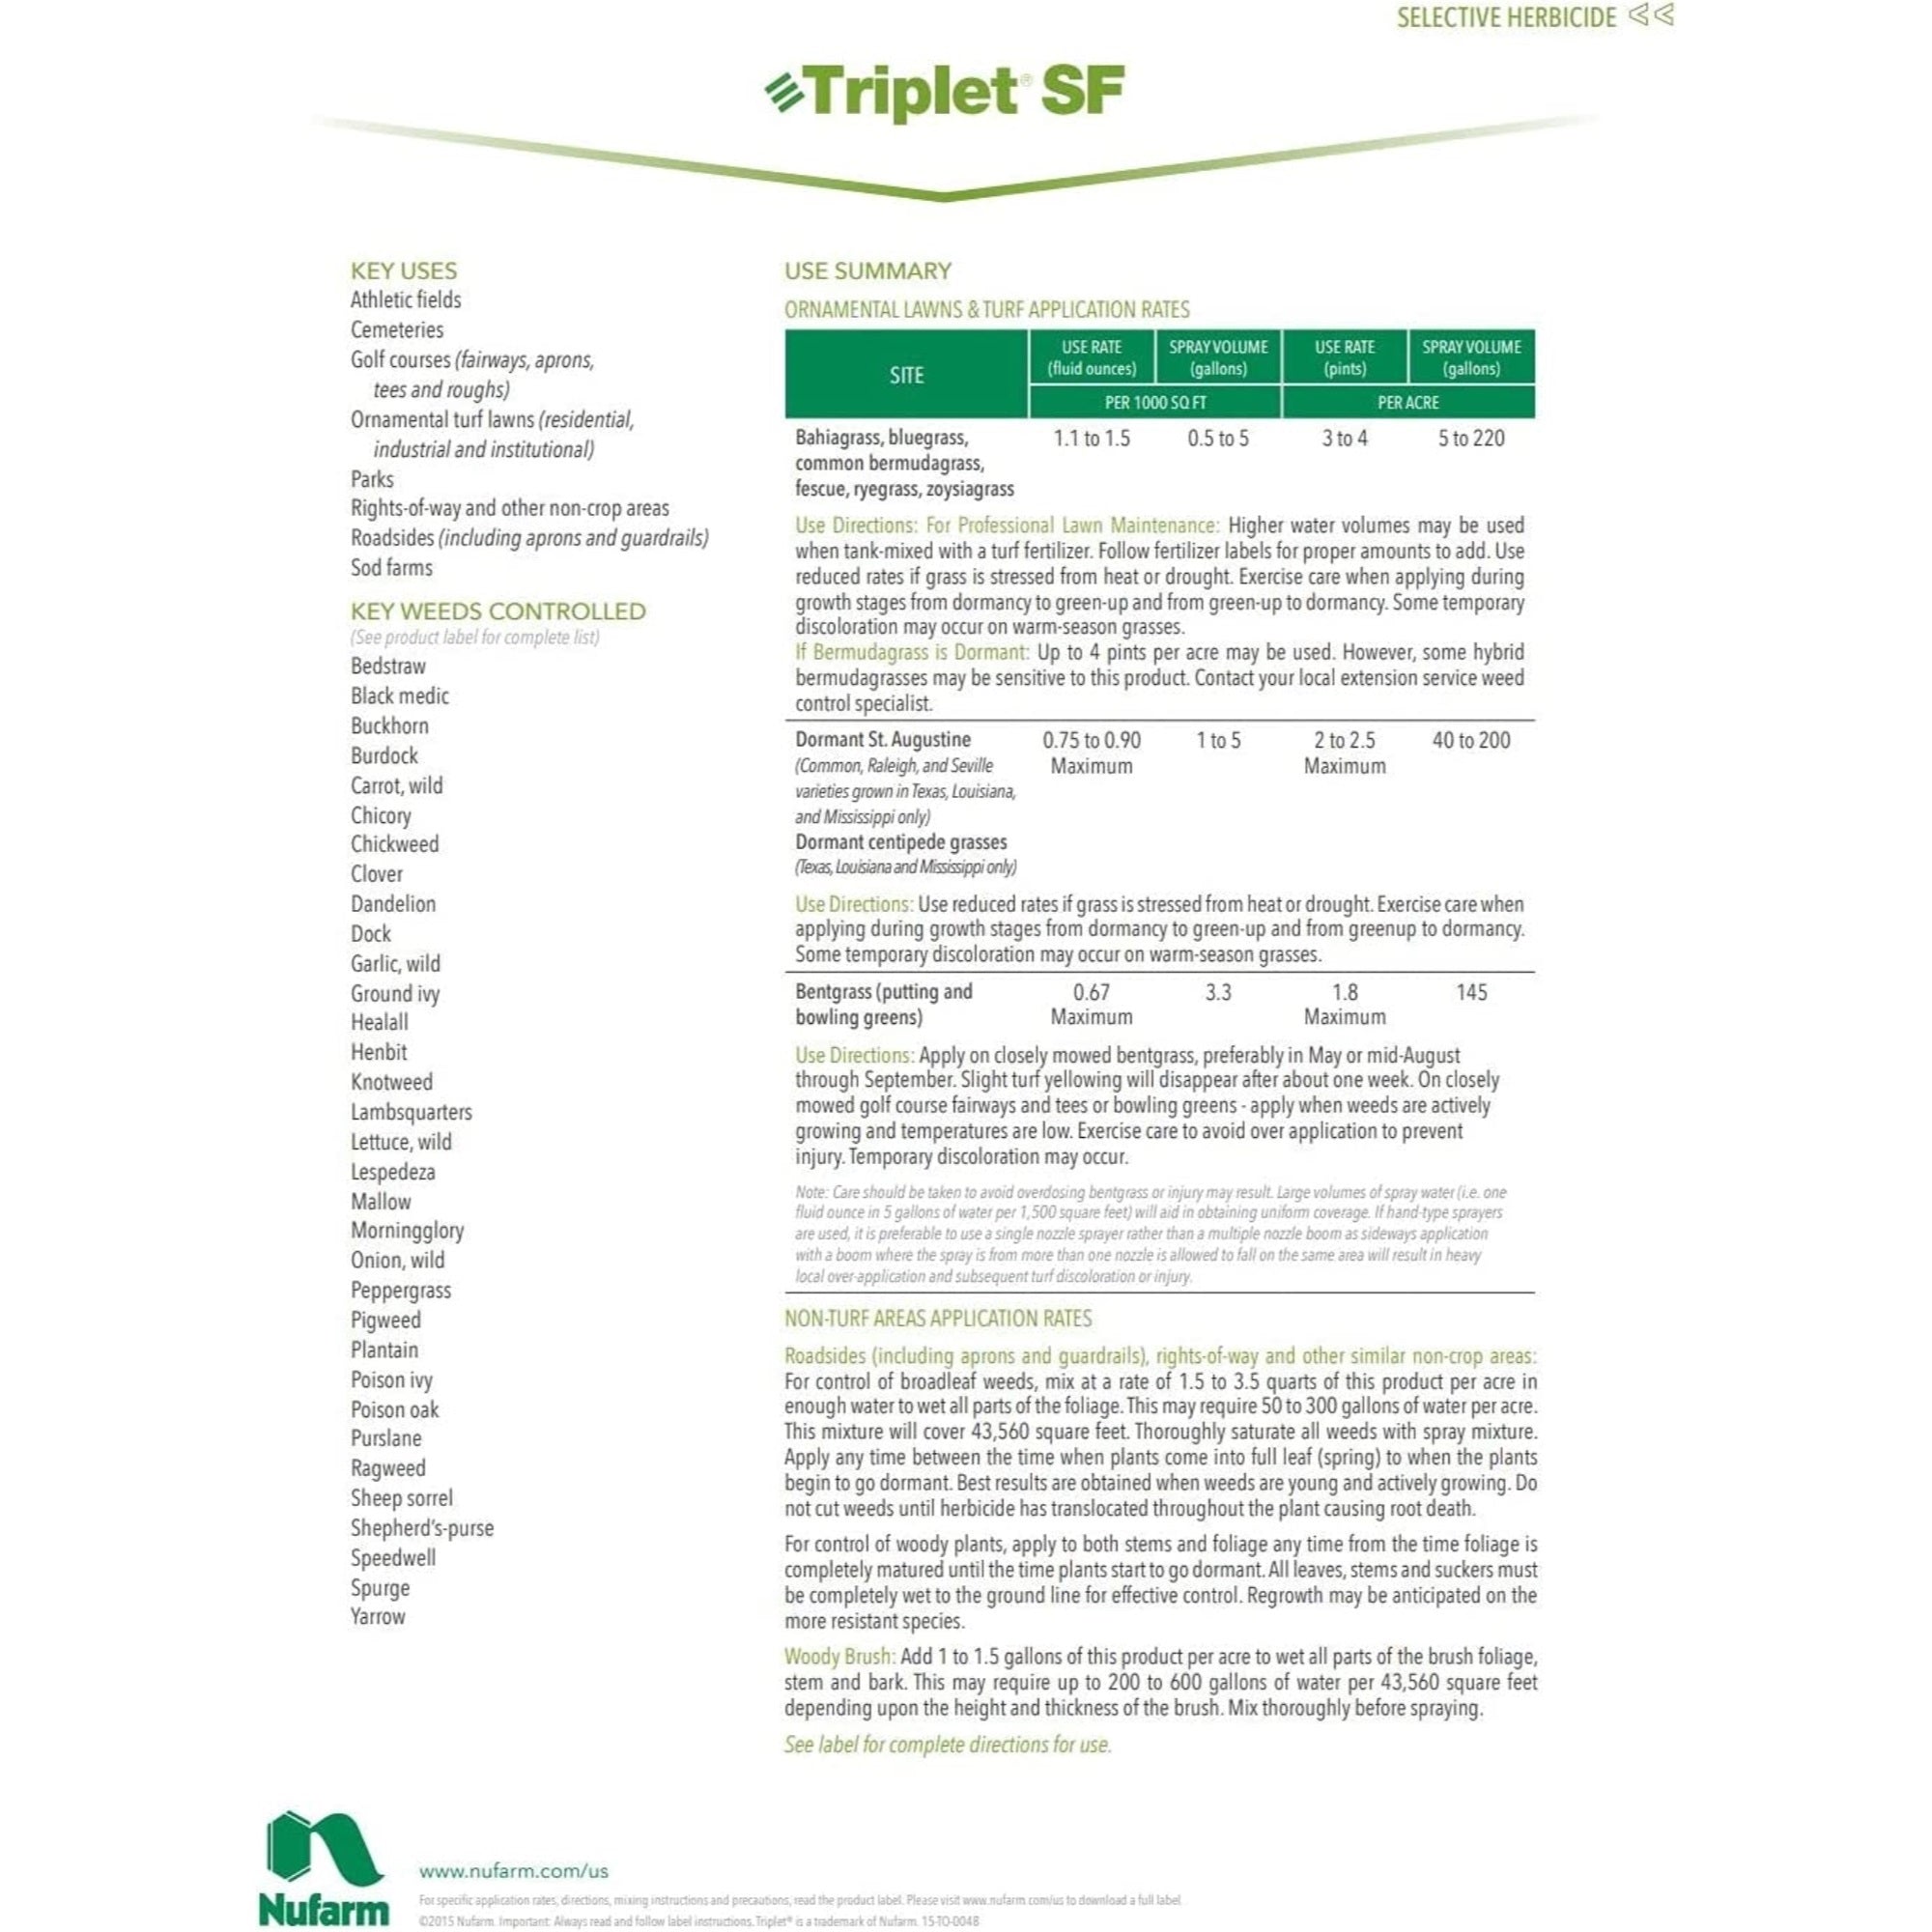 Nufarm Triplet SF Selective Herbicide, Post-Emergent Broadleaf Herbicide, 32 oz